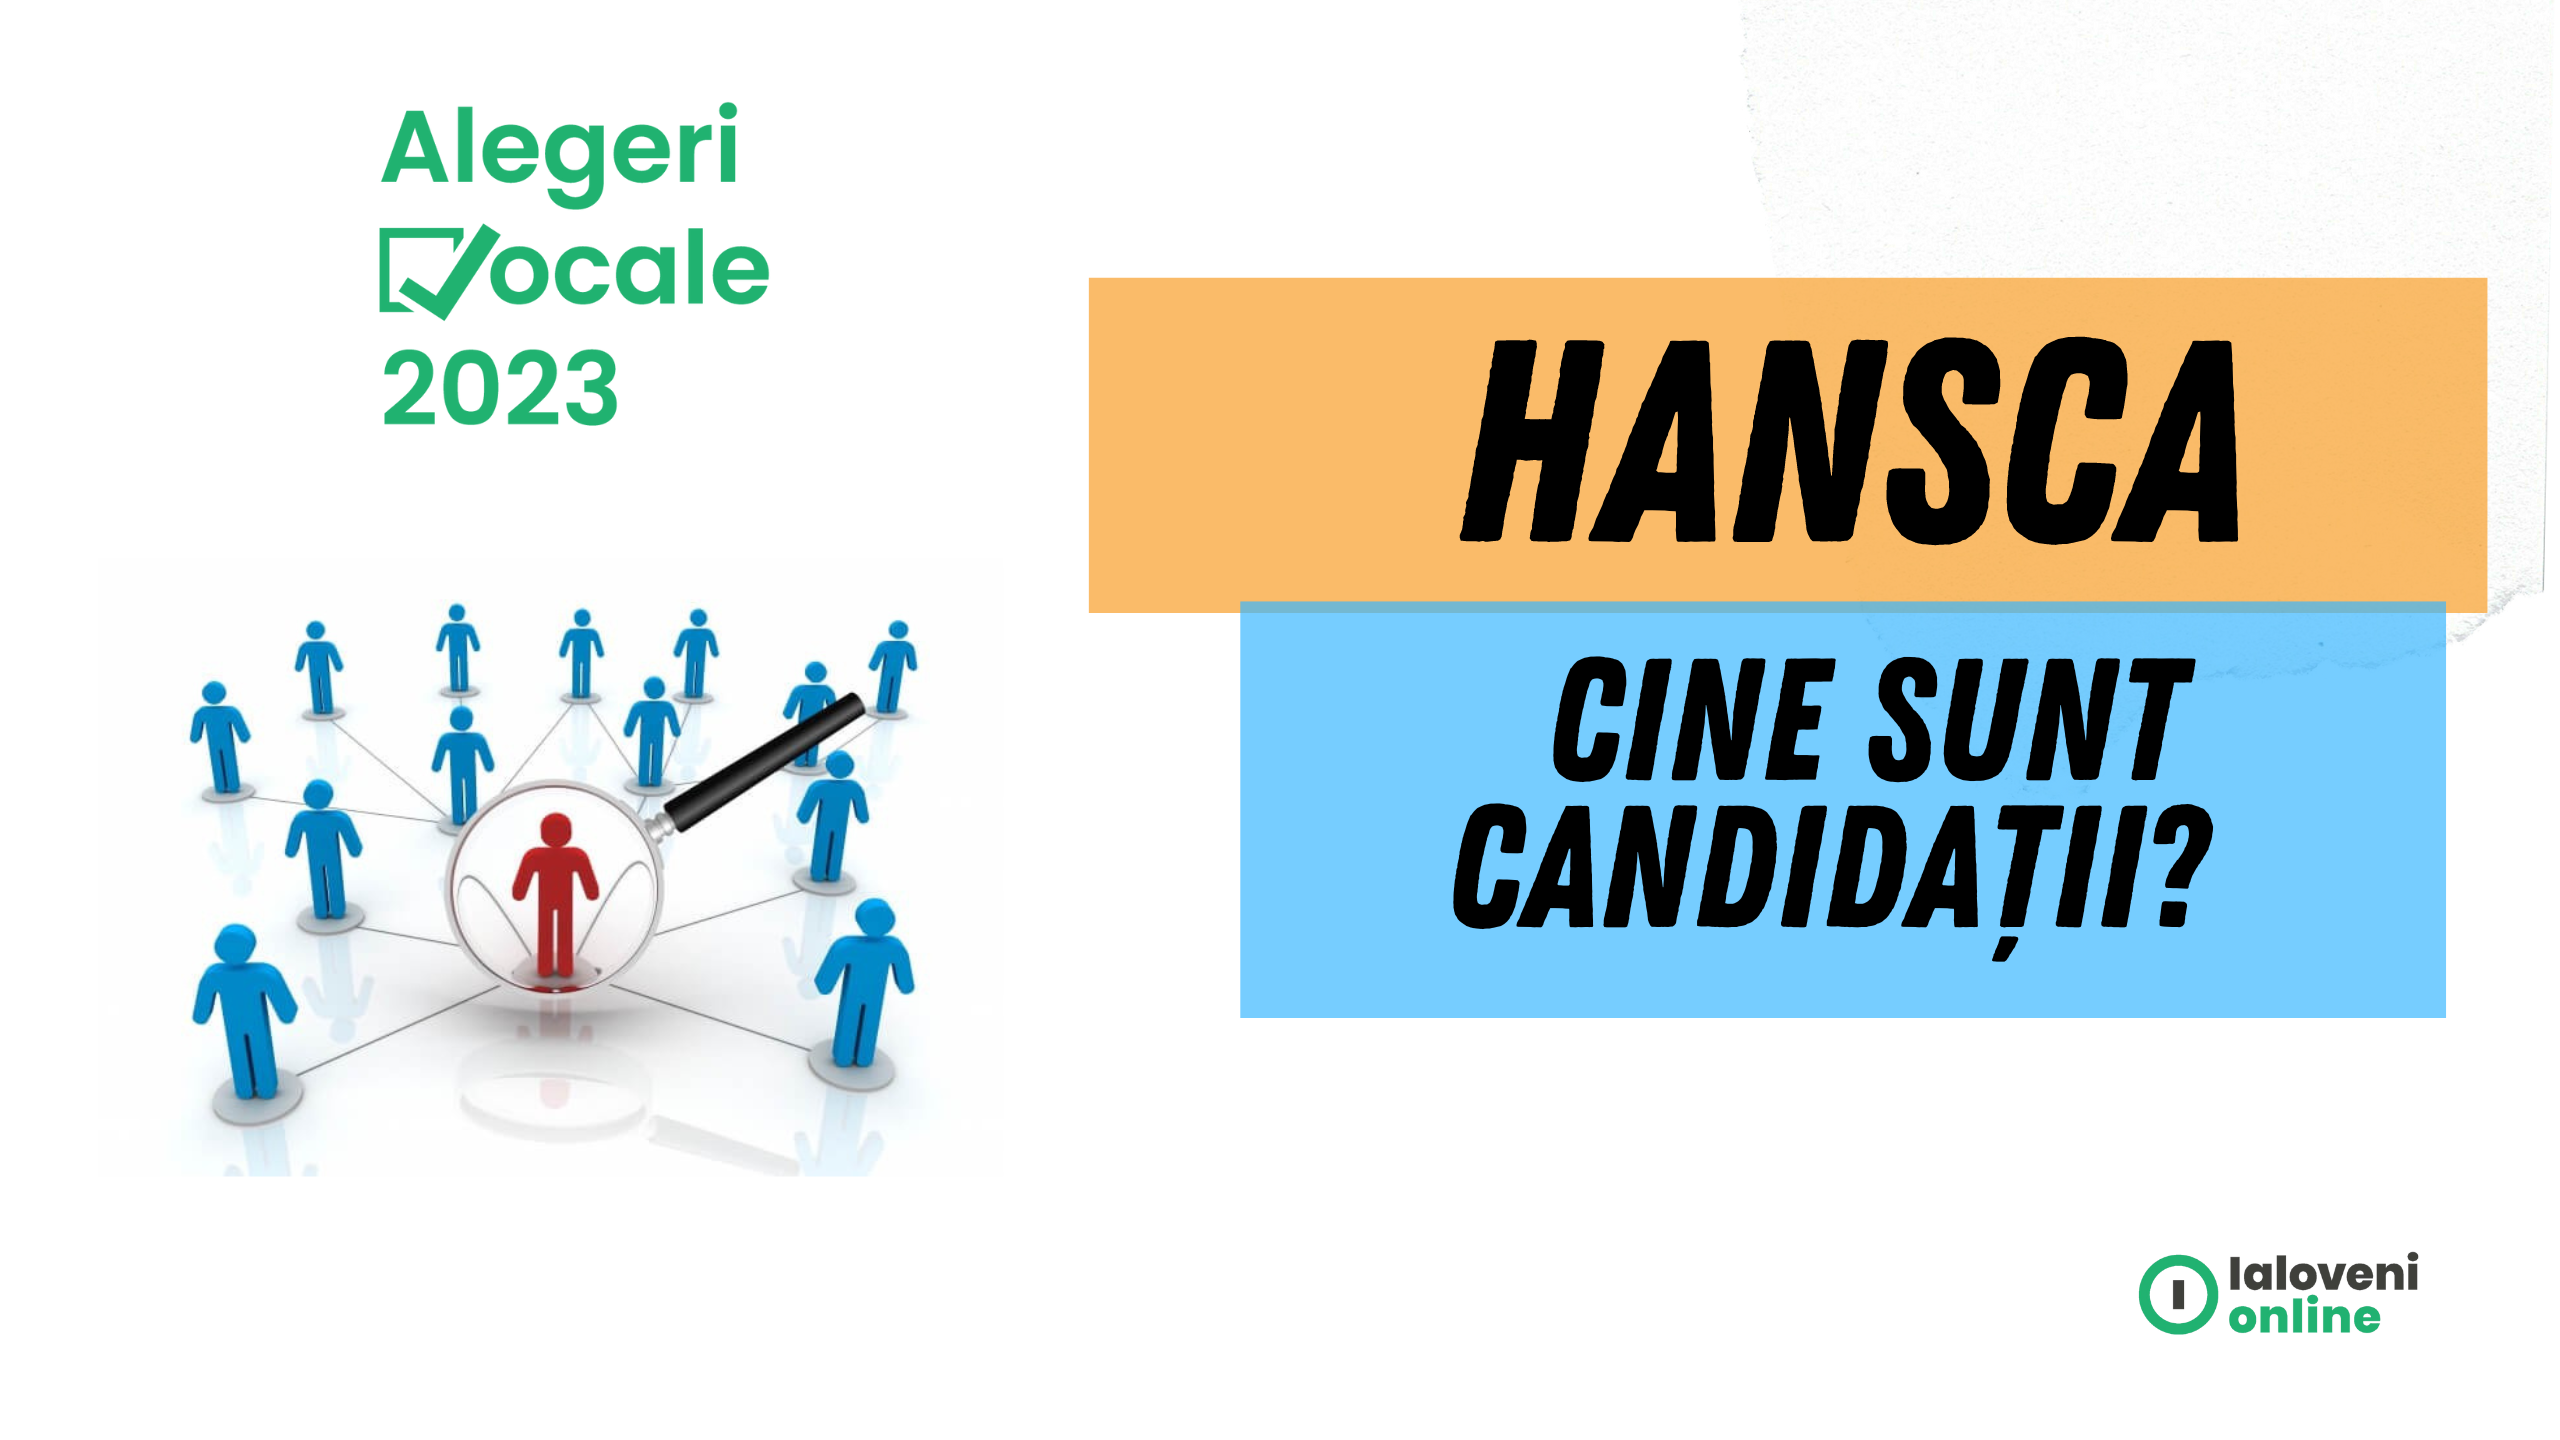 Alegeri locale Hansca 2023